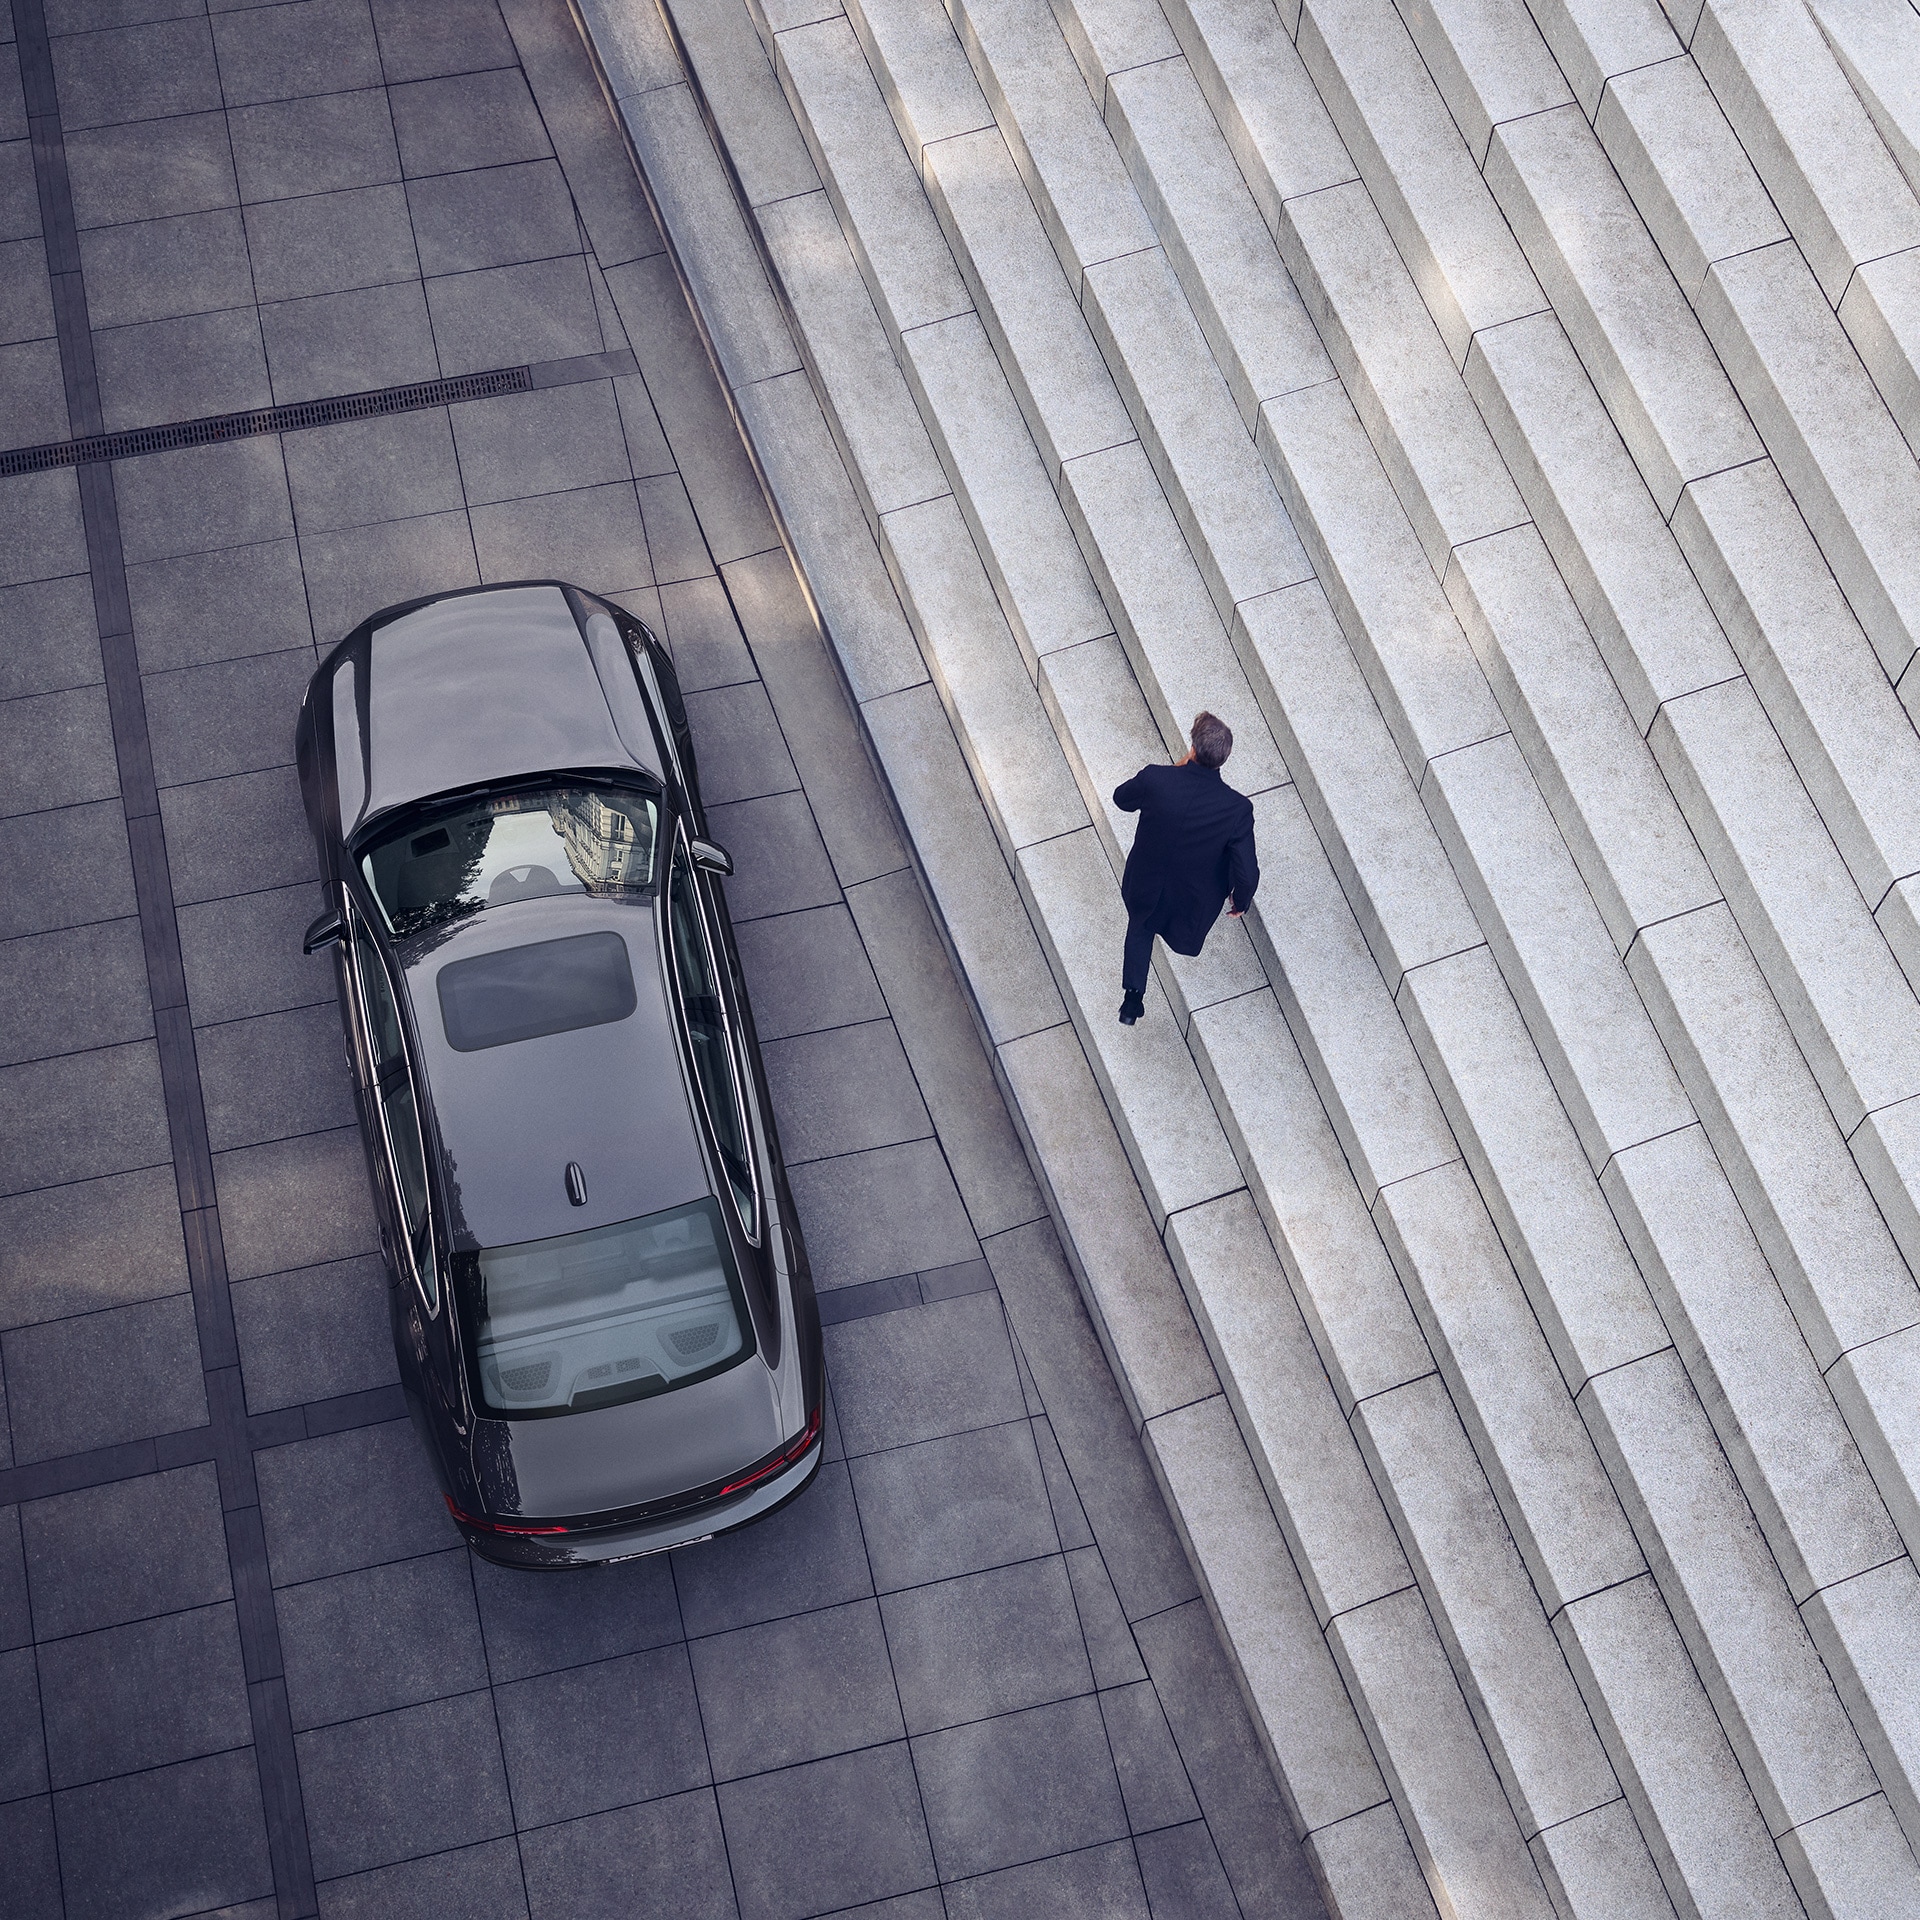 Volvo S90, паркирано пред стълби, мъж се отдалечава от колата.